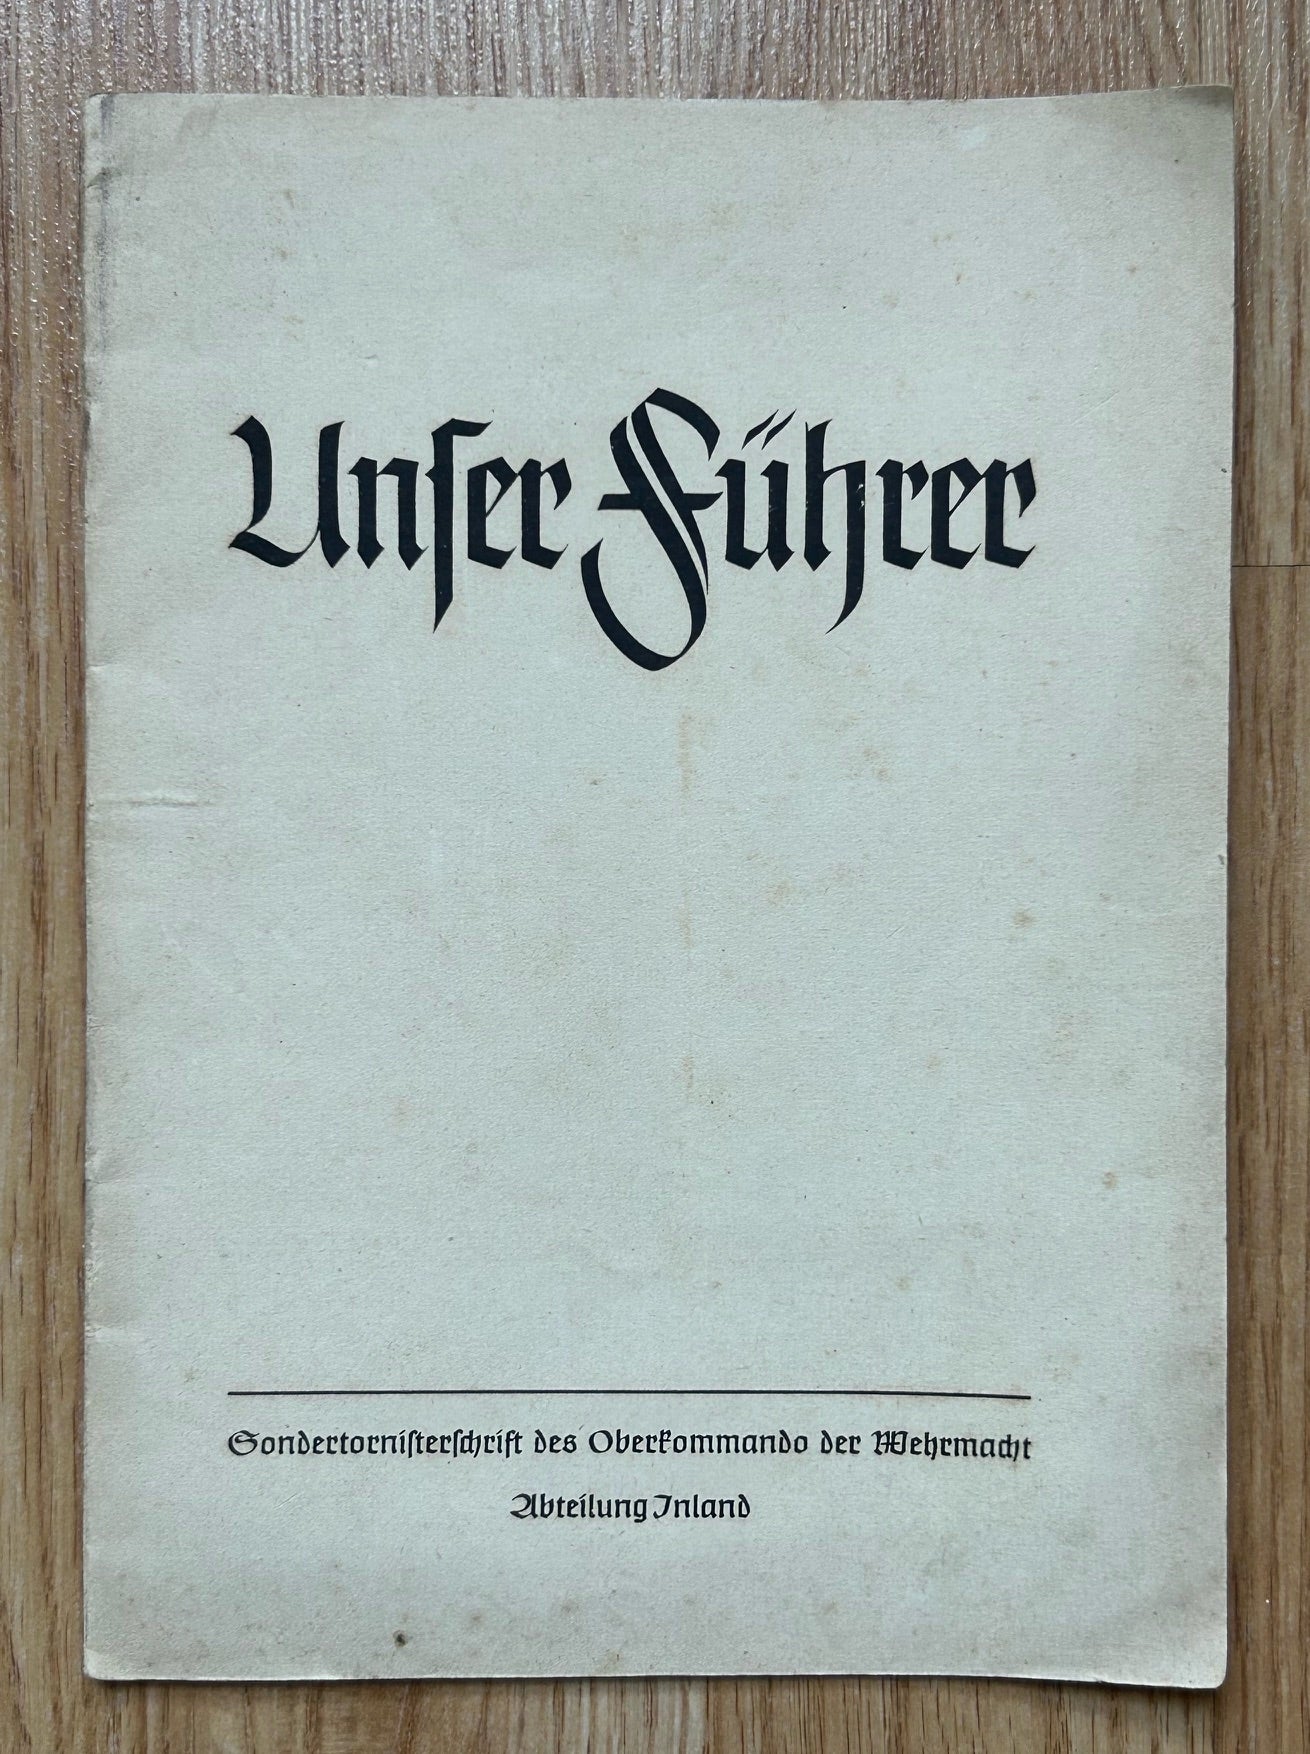 Unser Führer - Hitler’s speeches, Tornister OKW booklet